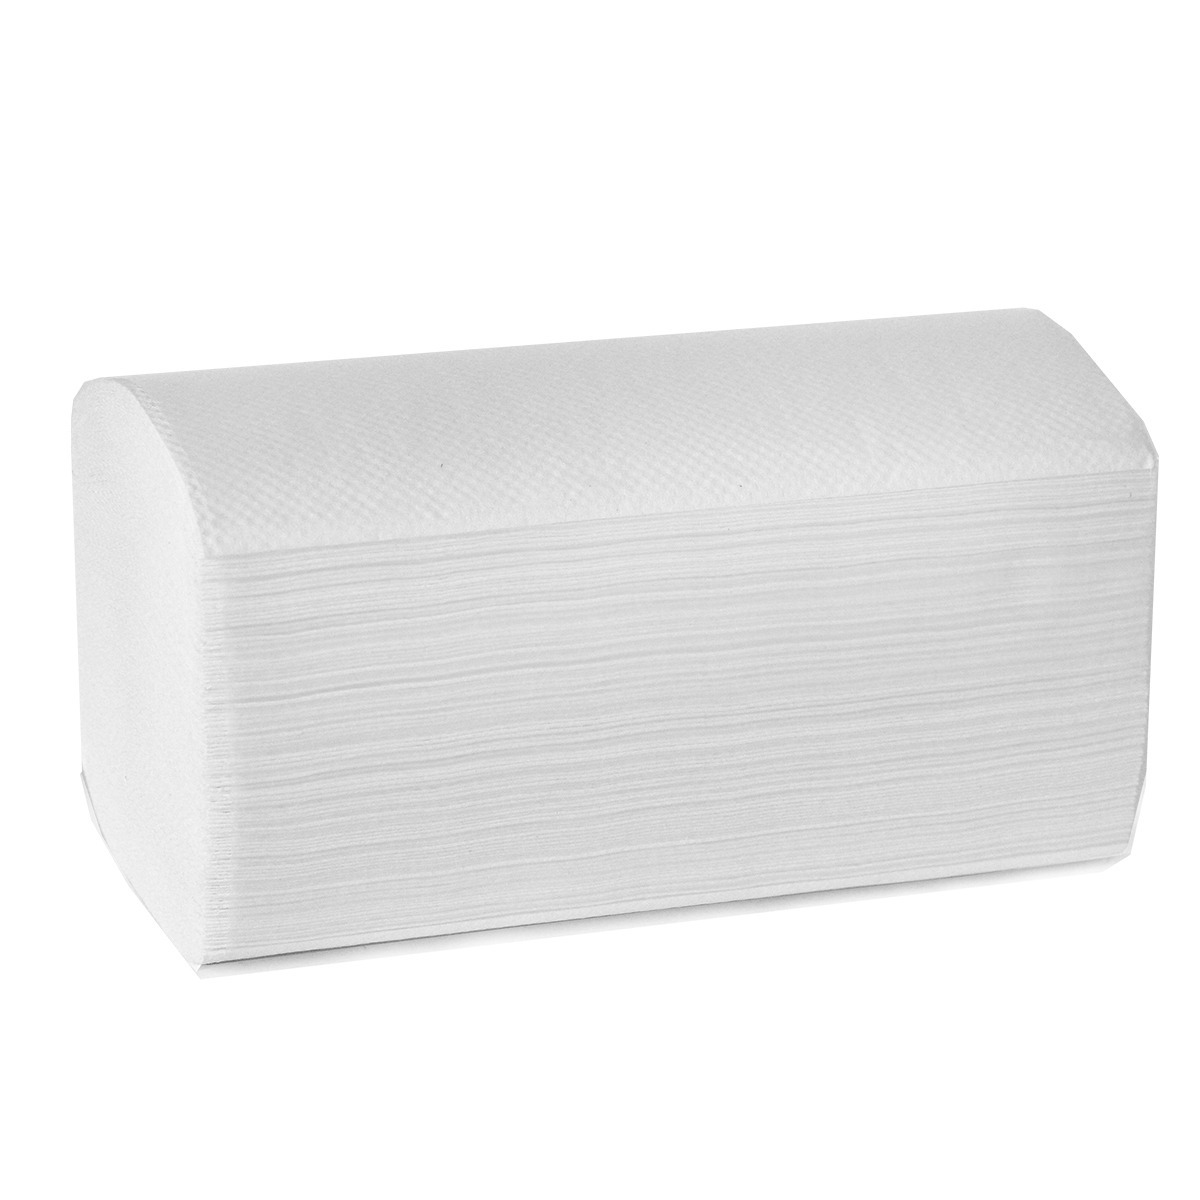 Листовые бумажные полотенца Premium NoName Z-сложения 216*240 мм,2 слоя белые 200 листов (Z32-200)